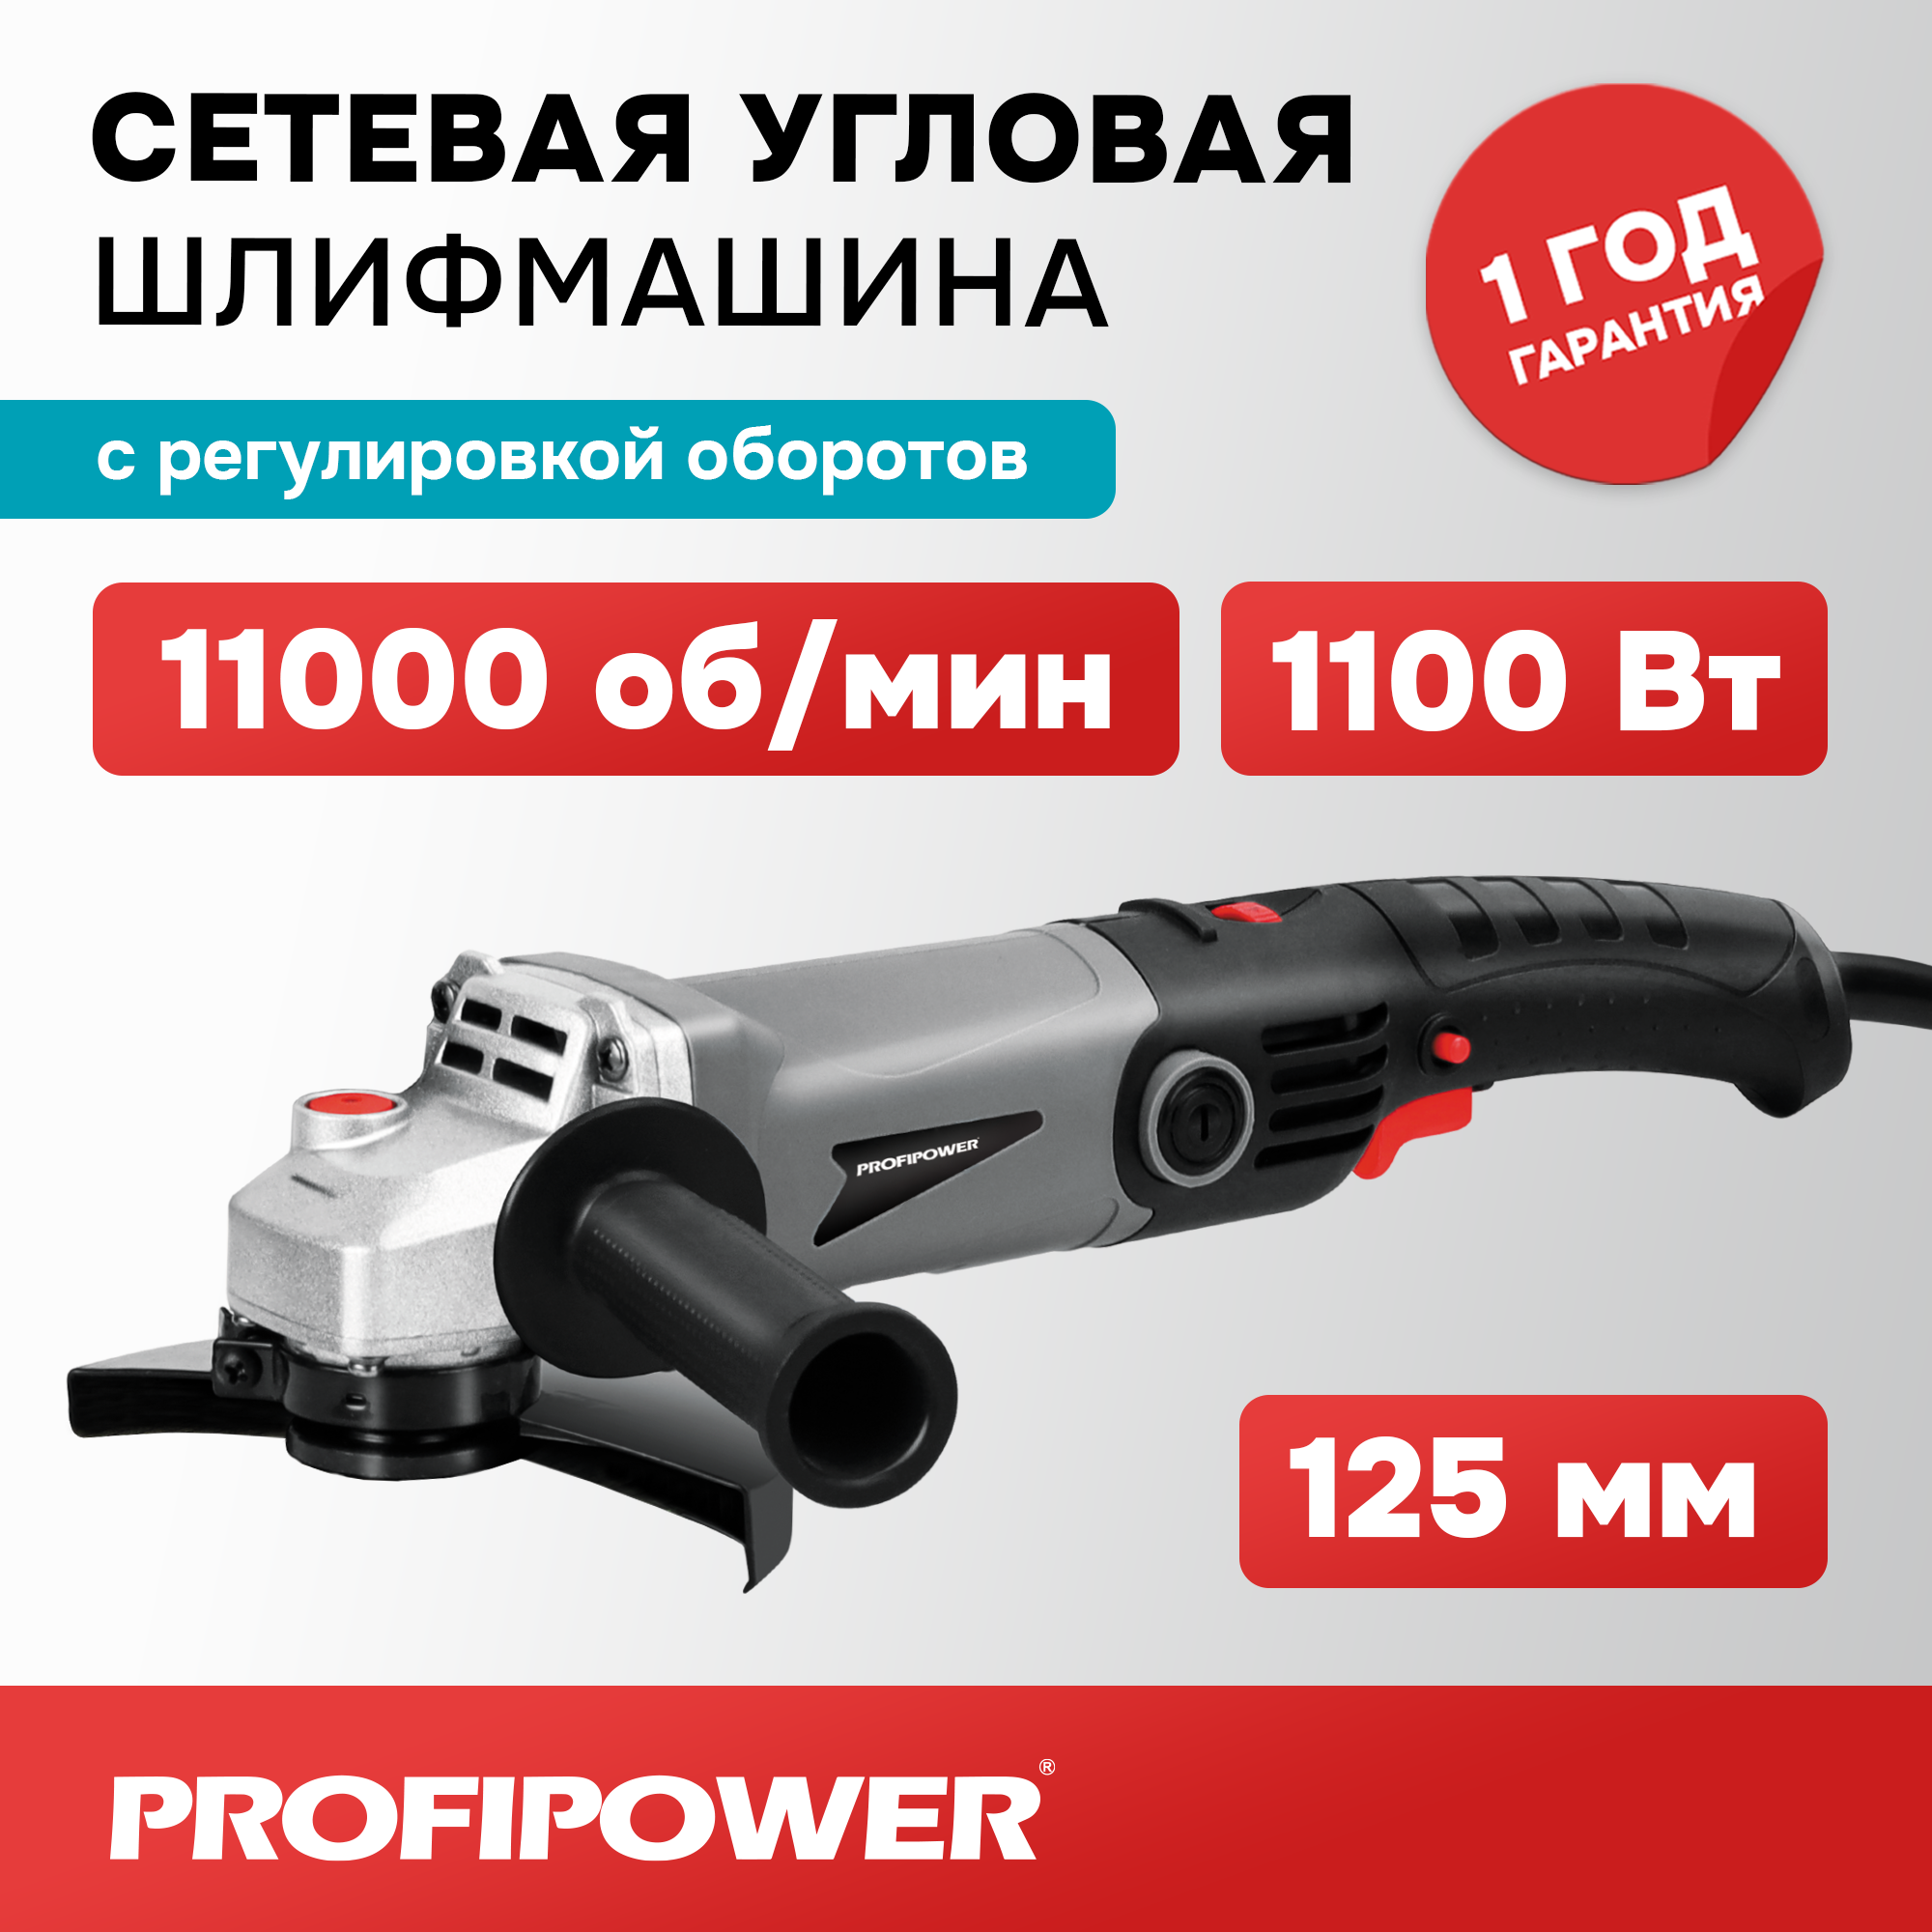 Сетевая УШМ (болгарка) Profipower PGS-1200R (1100 Вт, 125мм, 11000 об/мин, с регулировкой оборотов)